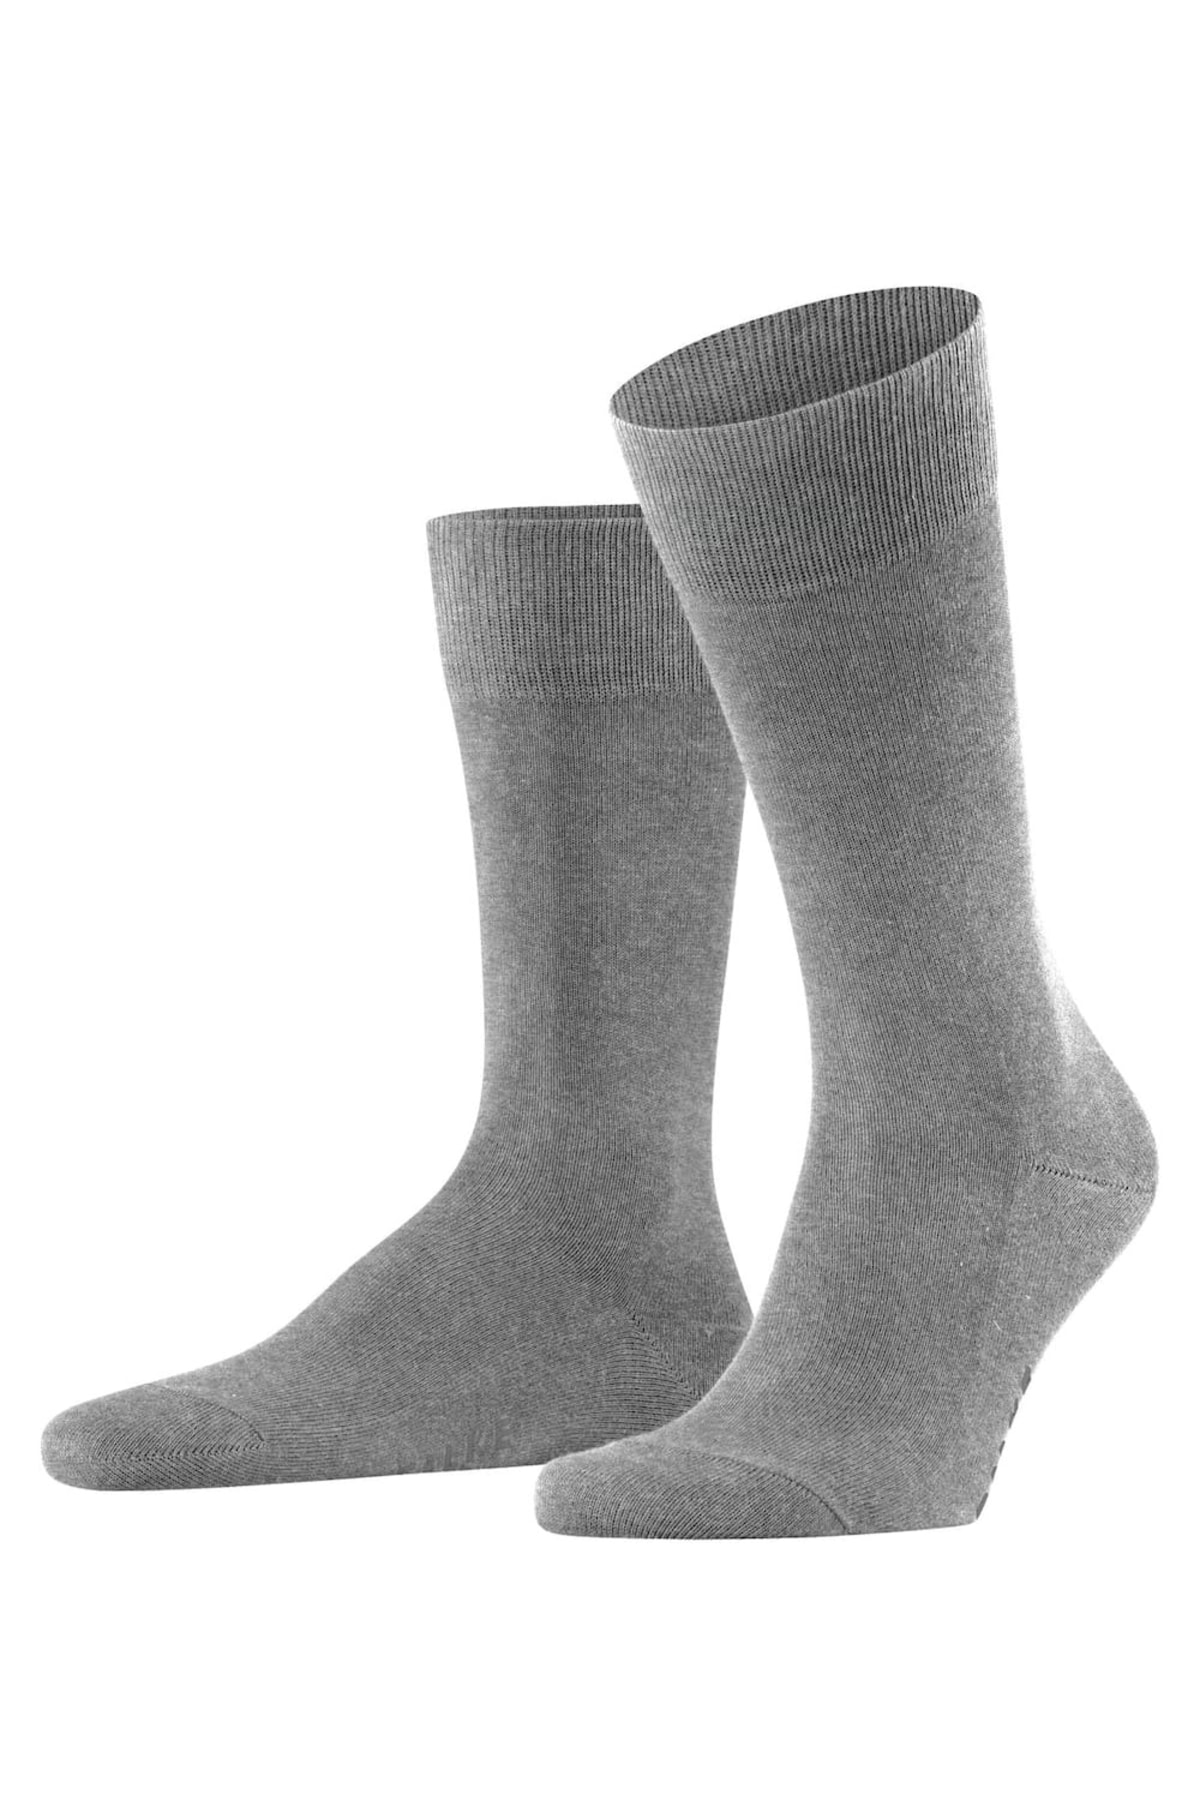 FALKE Socken Grau 1 Stück